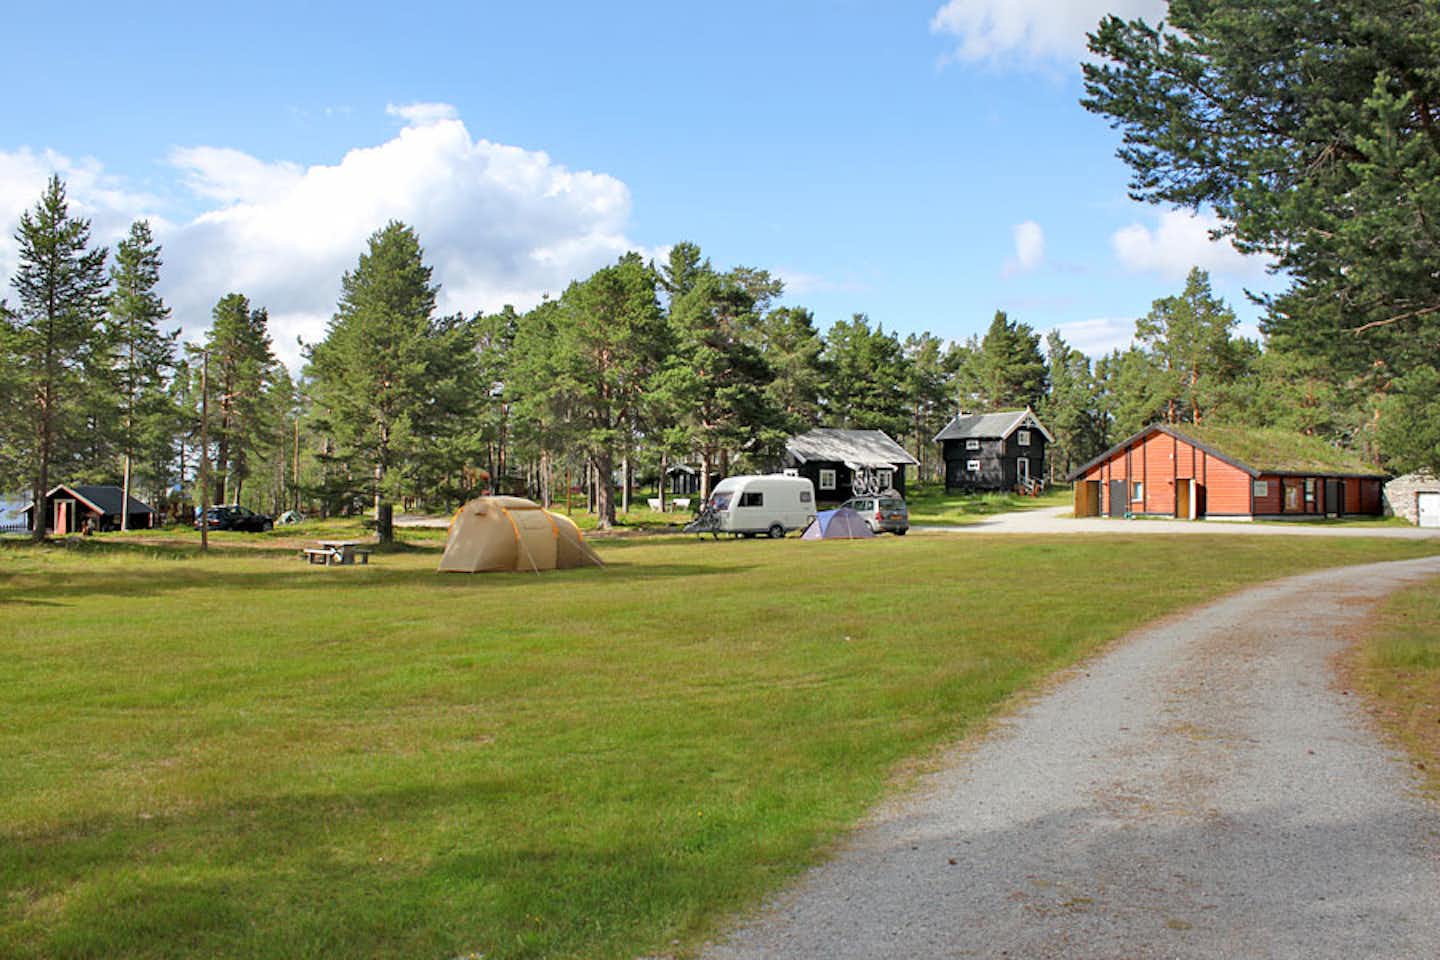 Camping Femundtunet - Wohnwagen- und Zeltstellplatz vom Campingplatz zwischen Bäumen